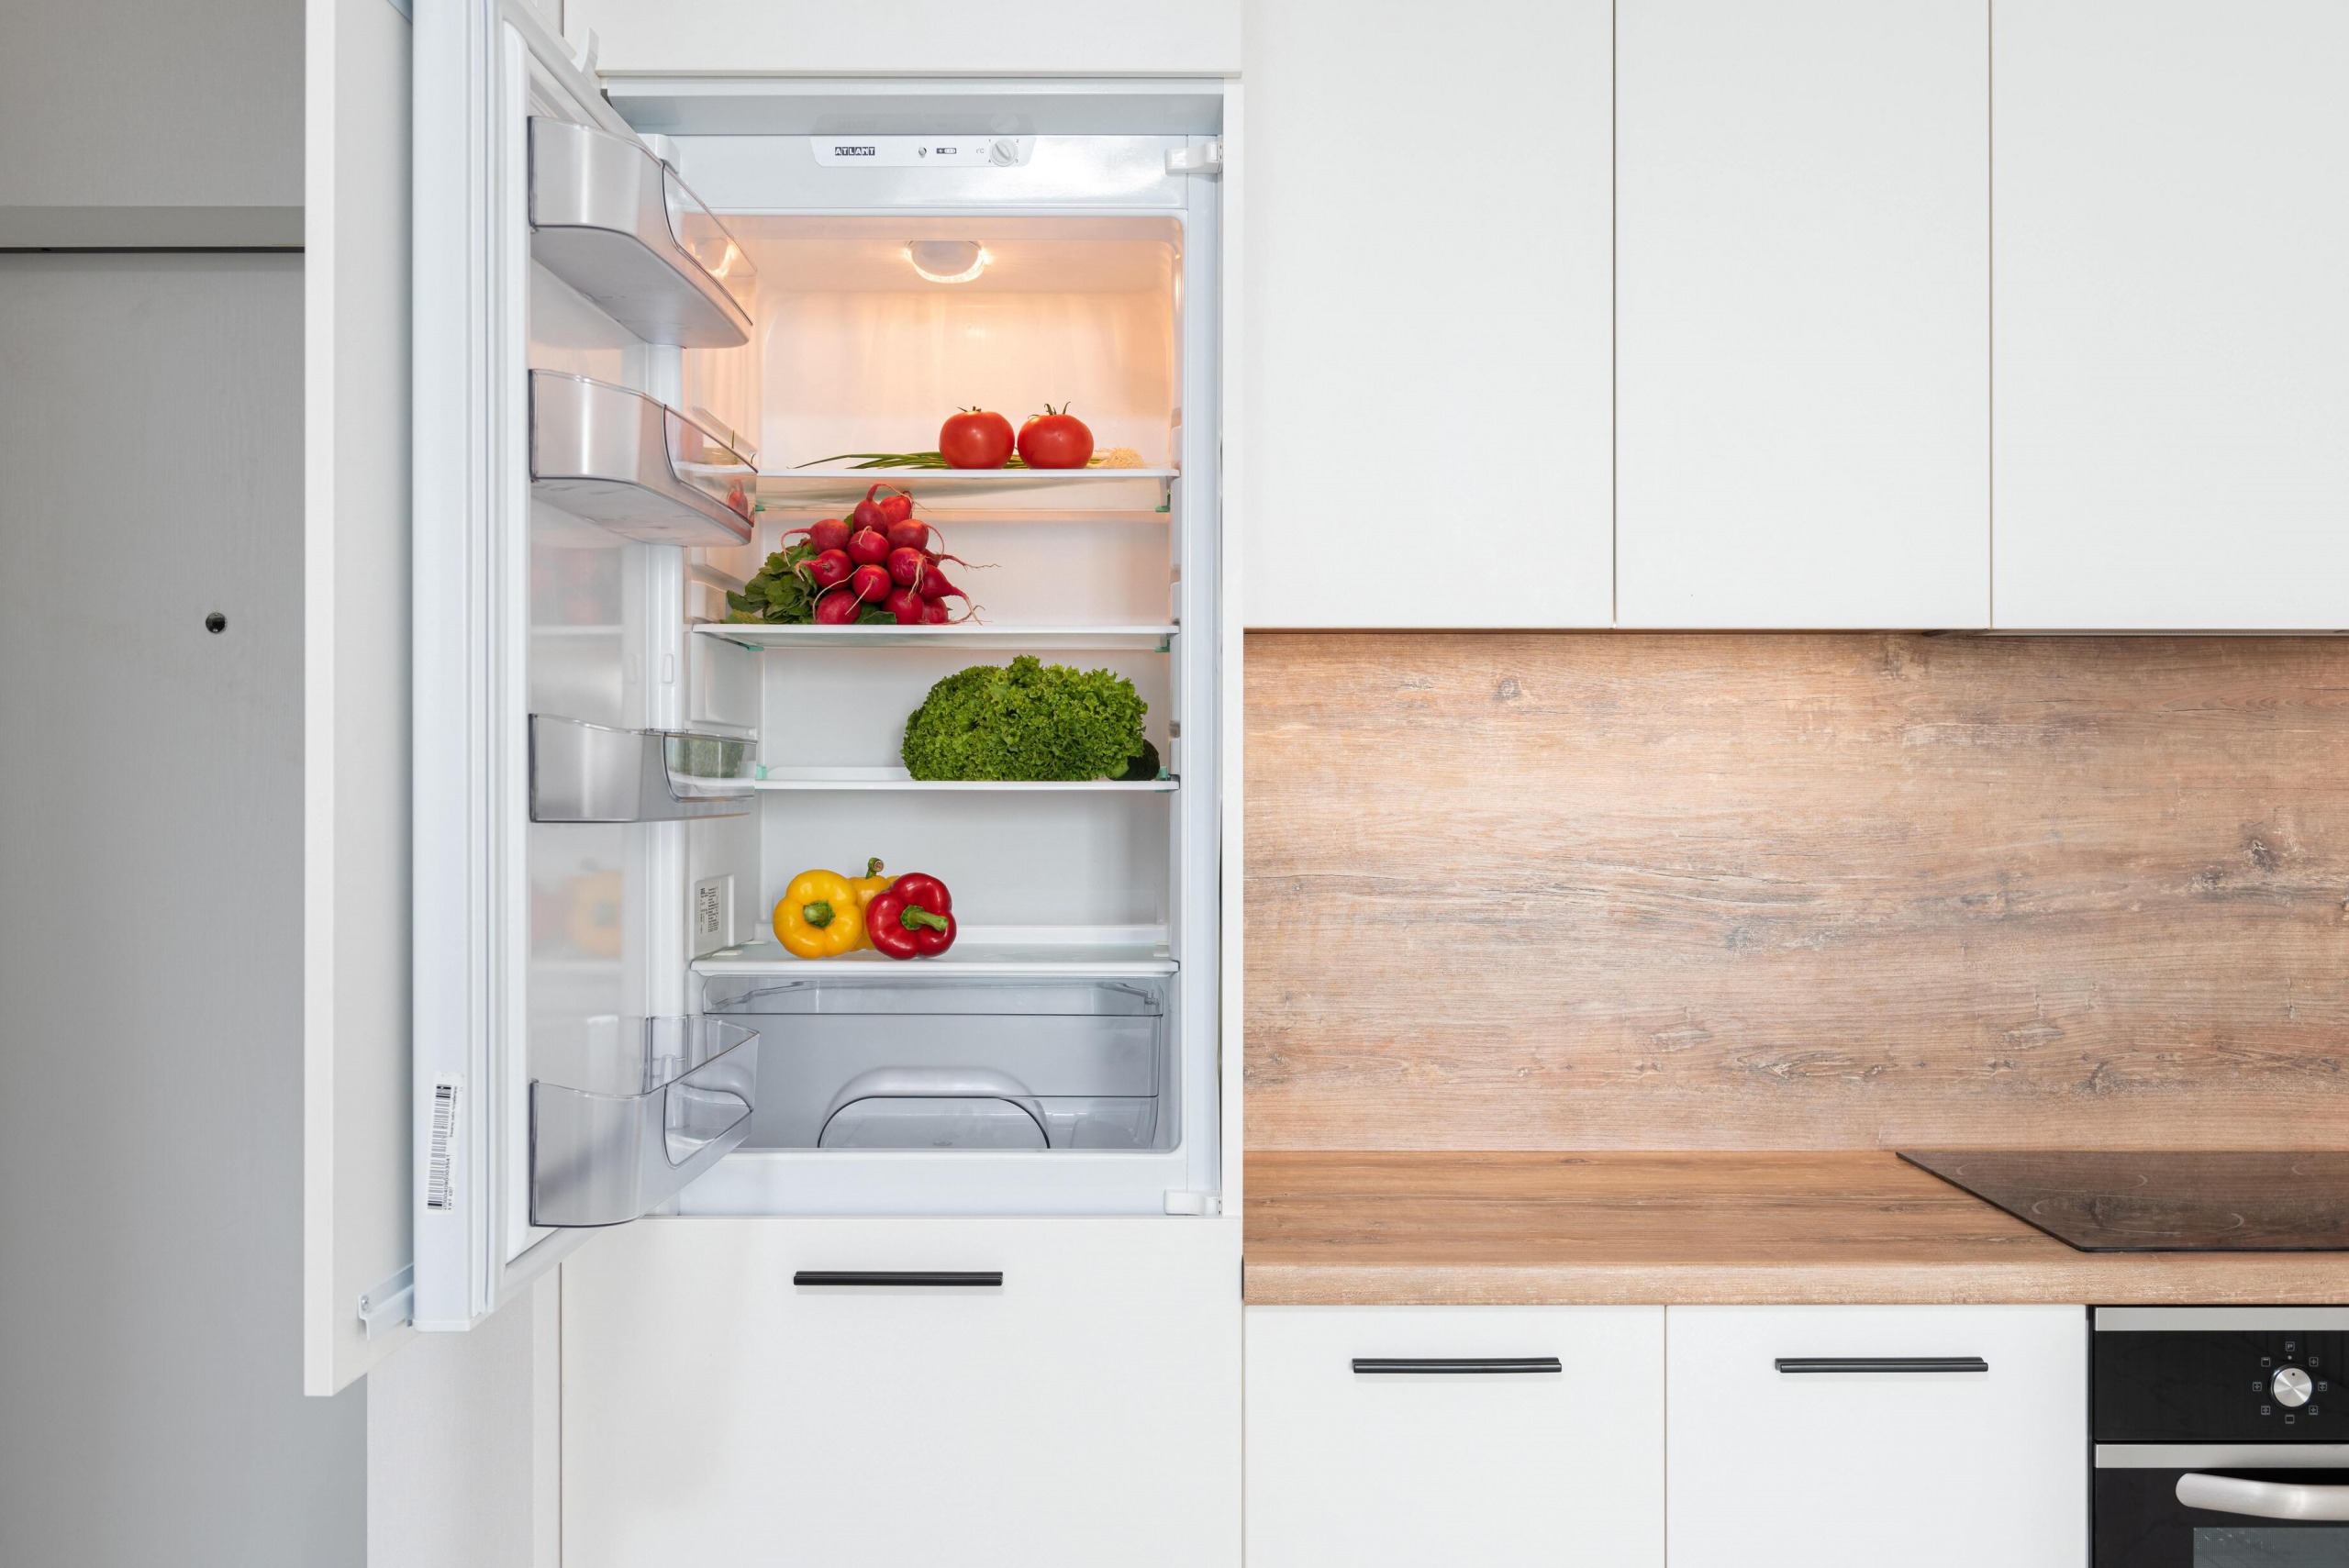 Where to Put a Refrigerator